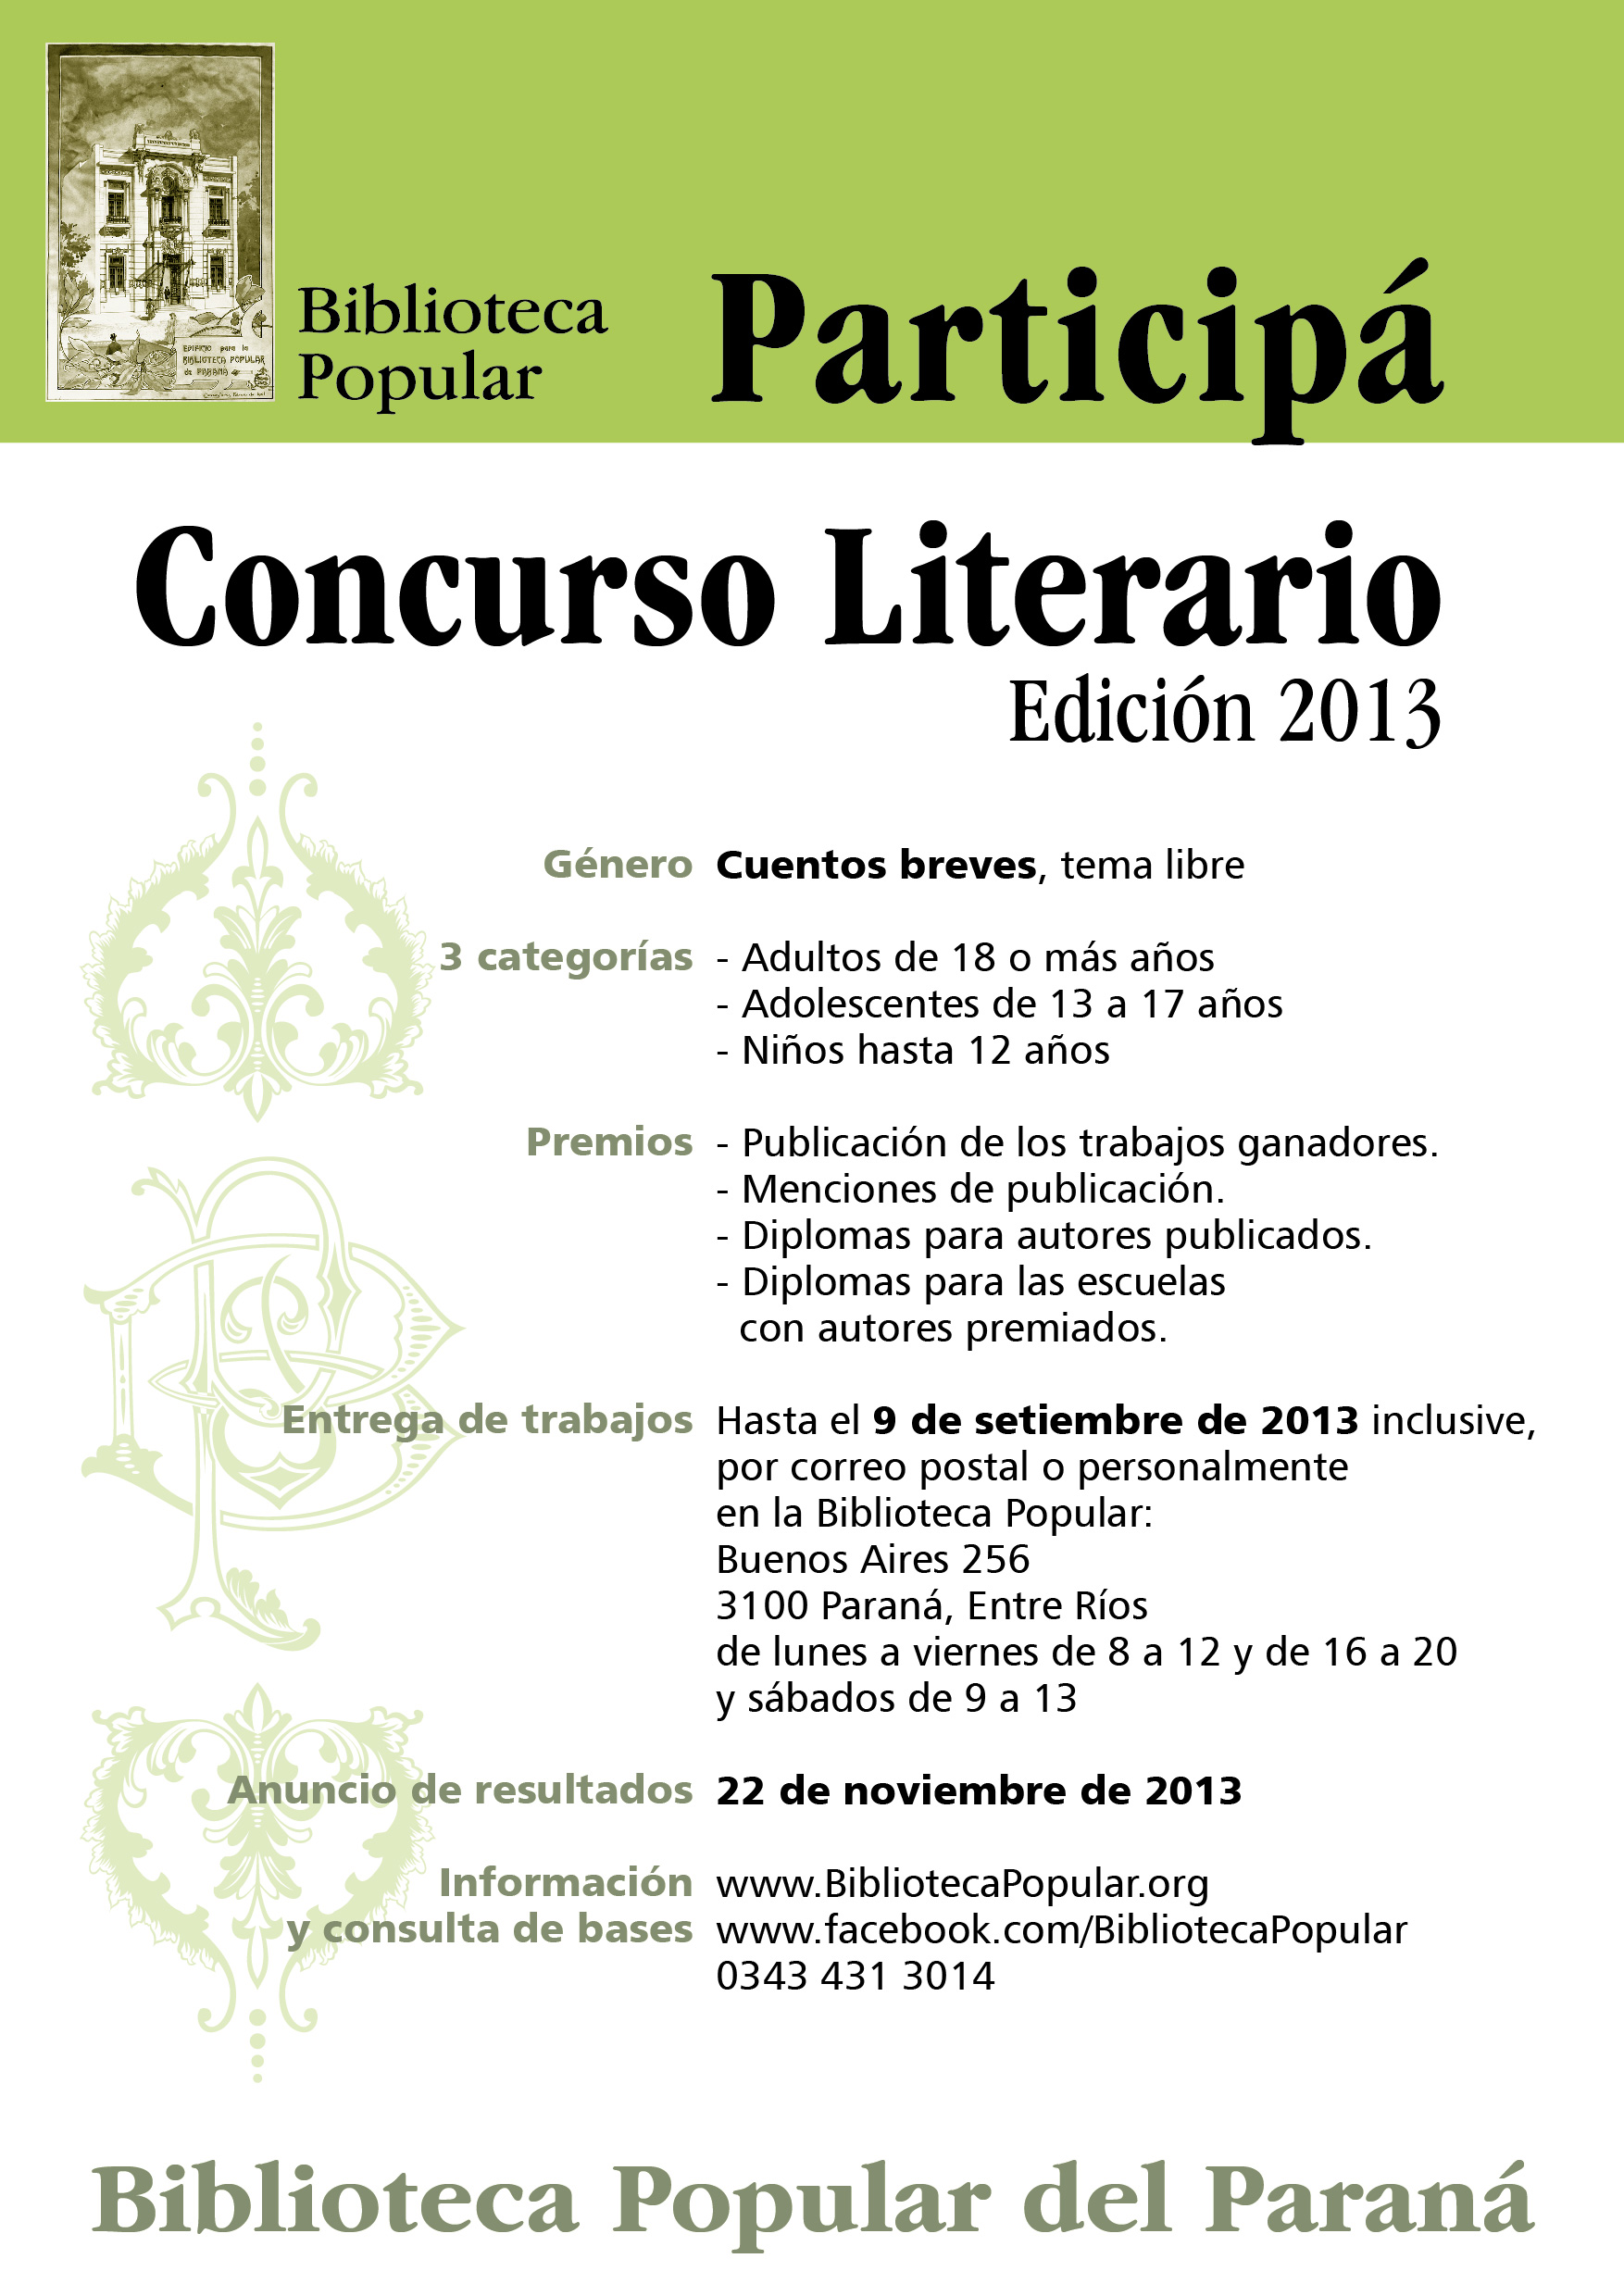 Afiche promocional del Concurso Biblioteca Popular del Paraná, Edición 2013